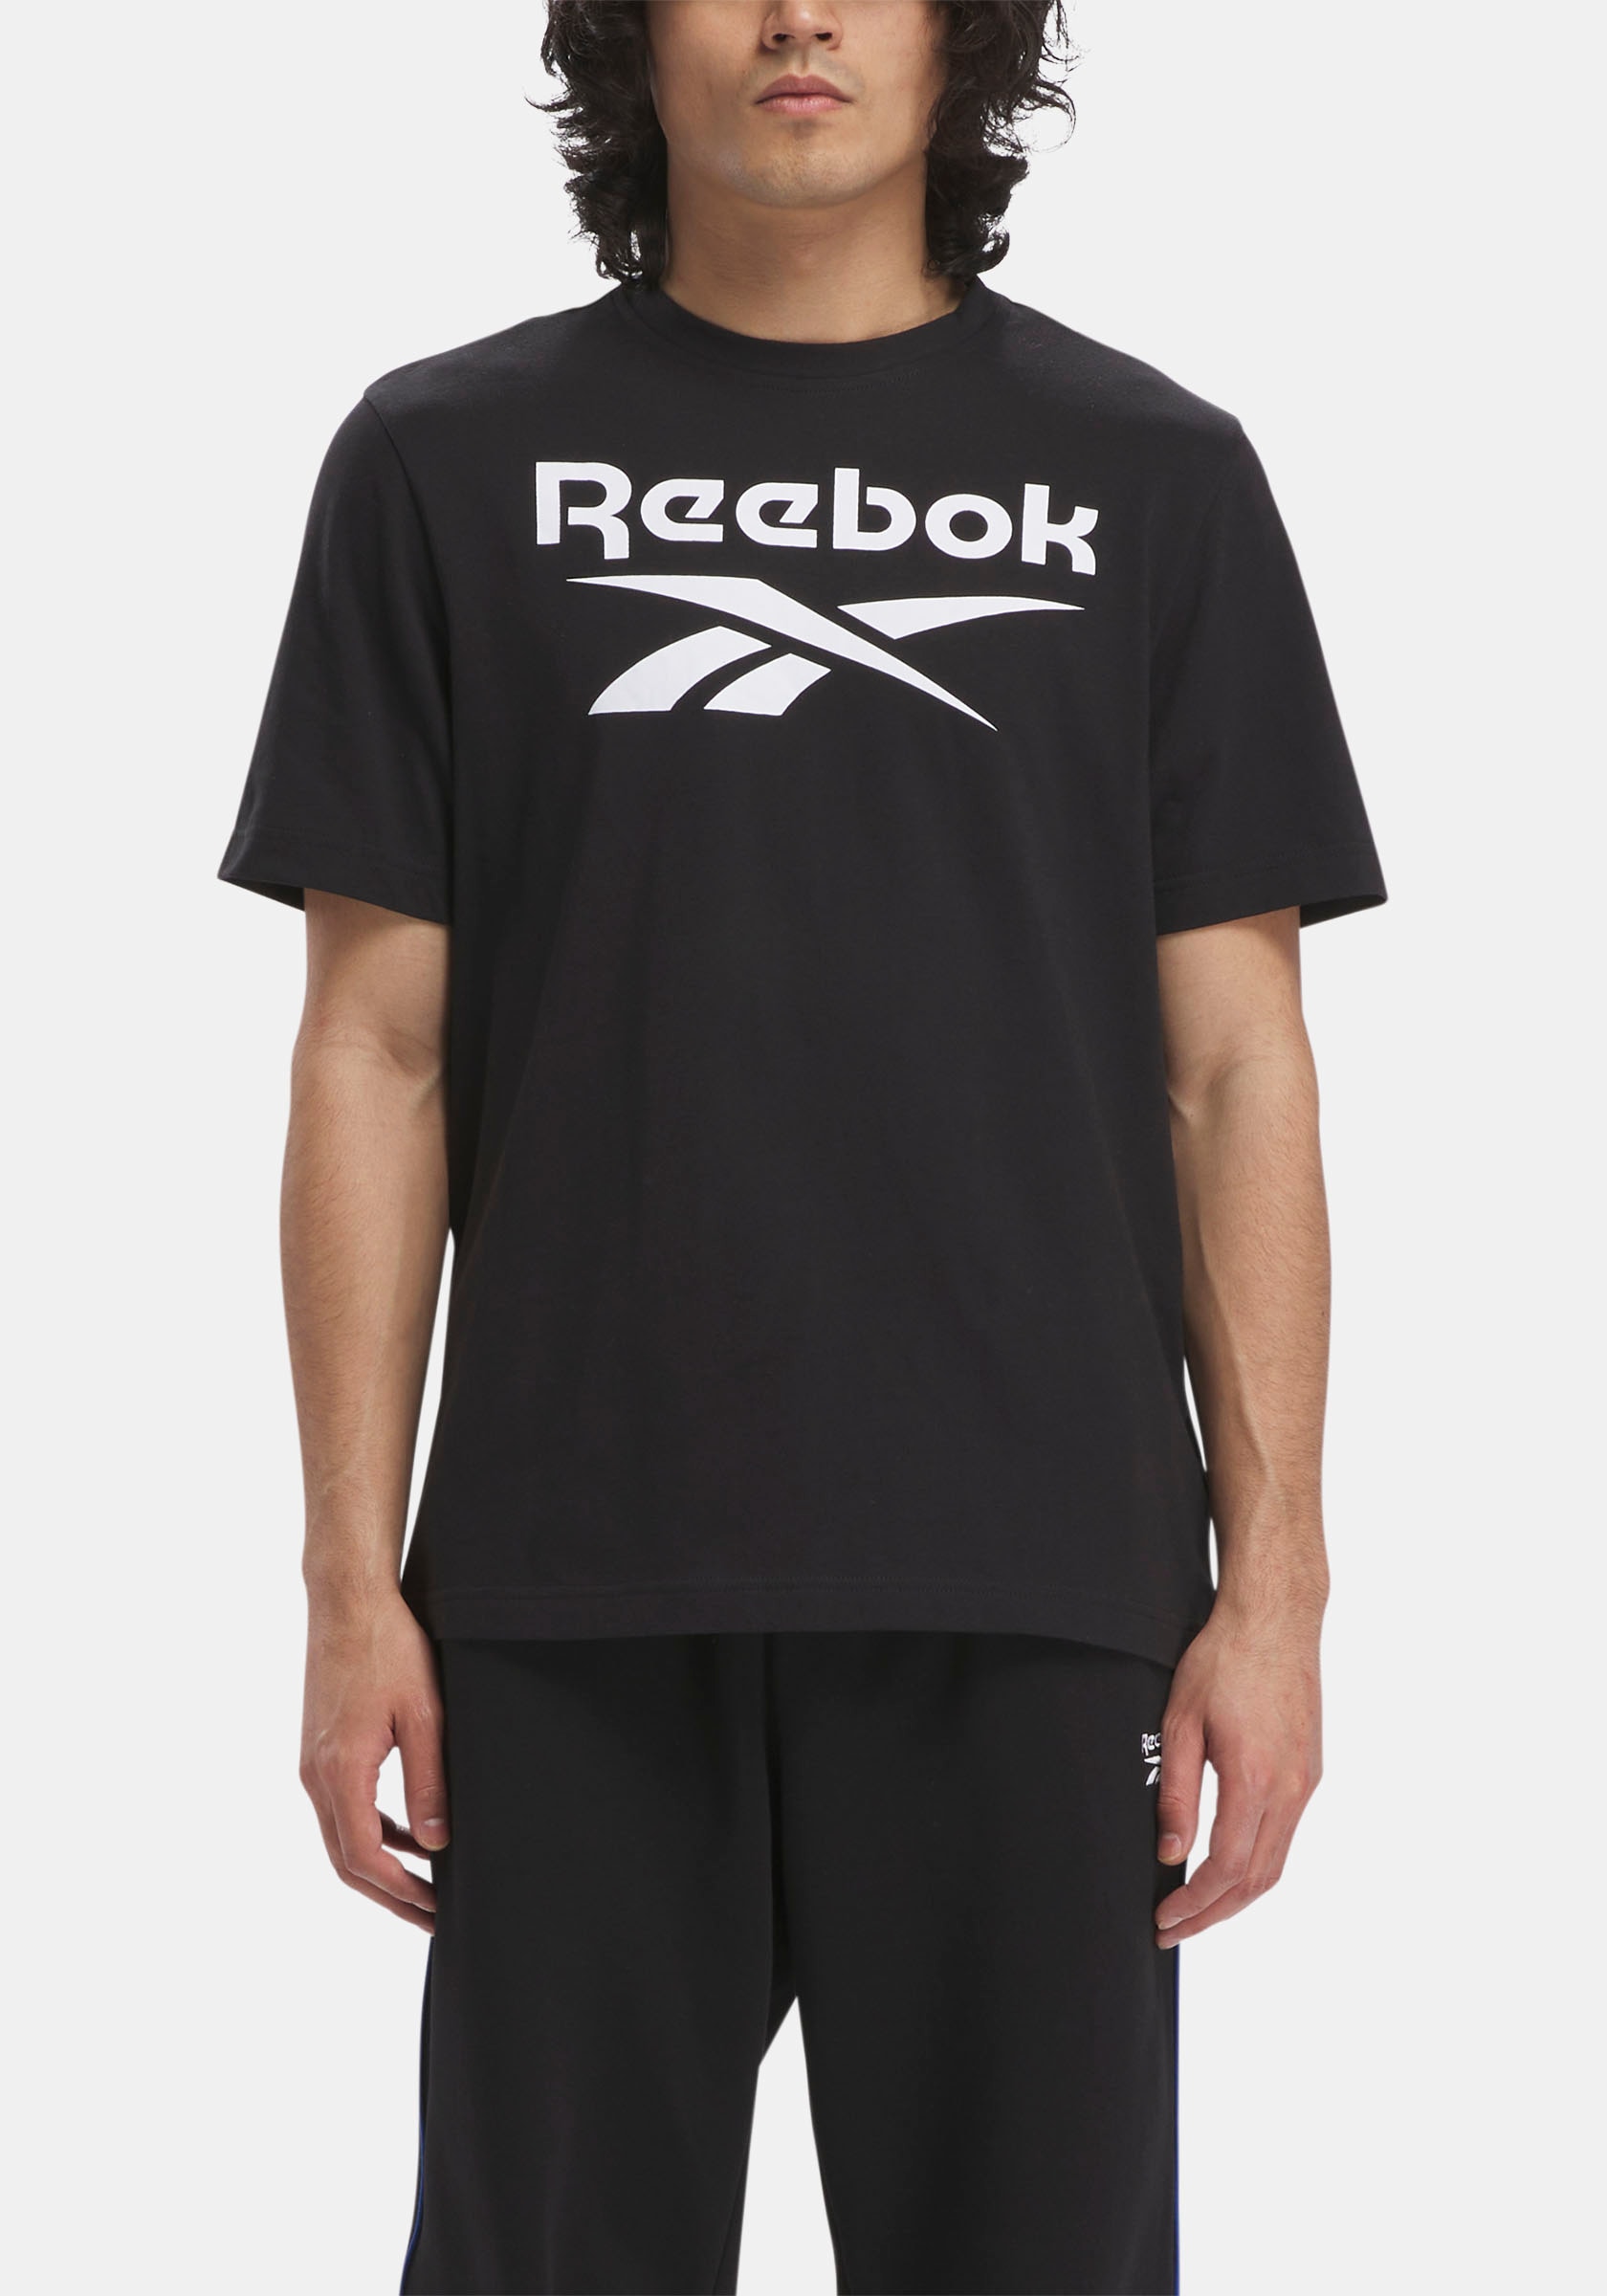 Reebok T-Shirt von Reebok